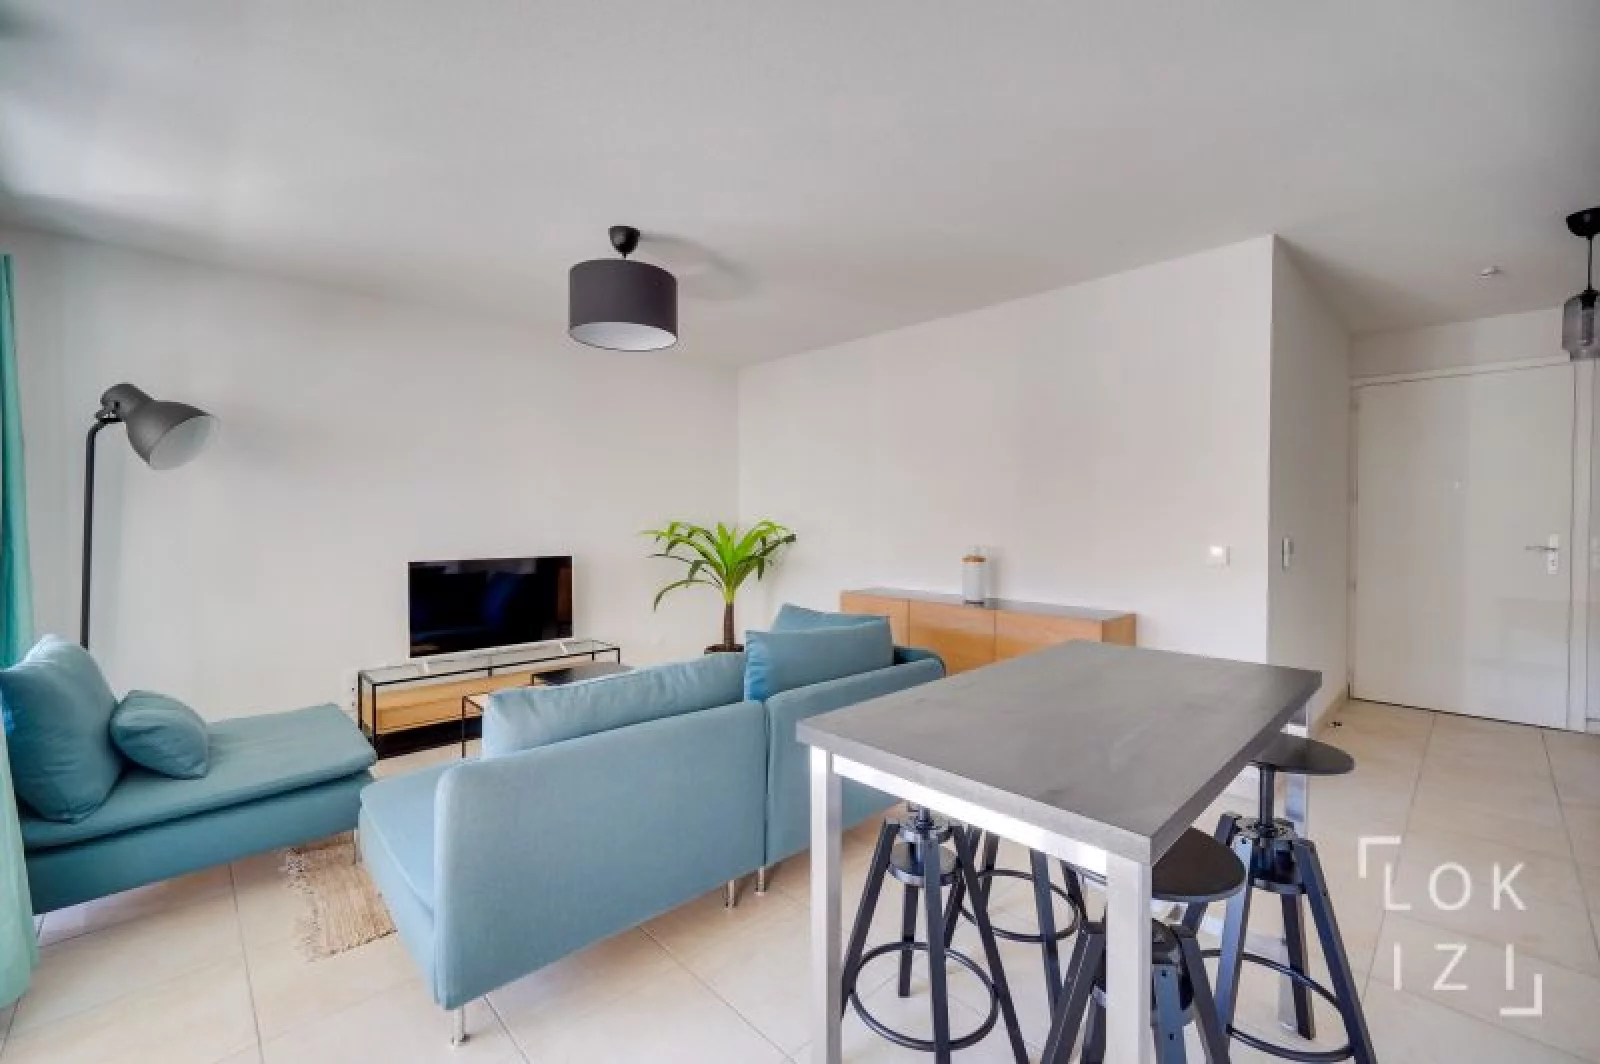 Location appartement meublé 2 pièces 43m² (Bordeaux - Bassins à flot) 